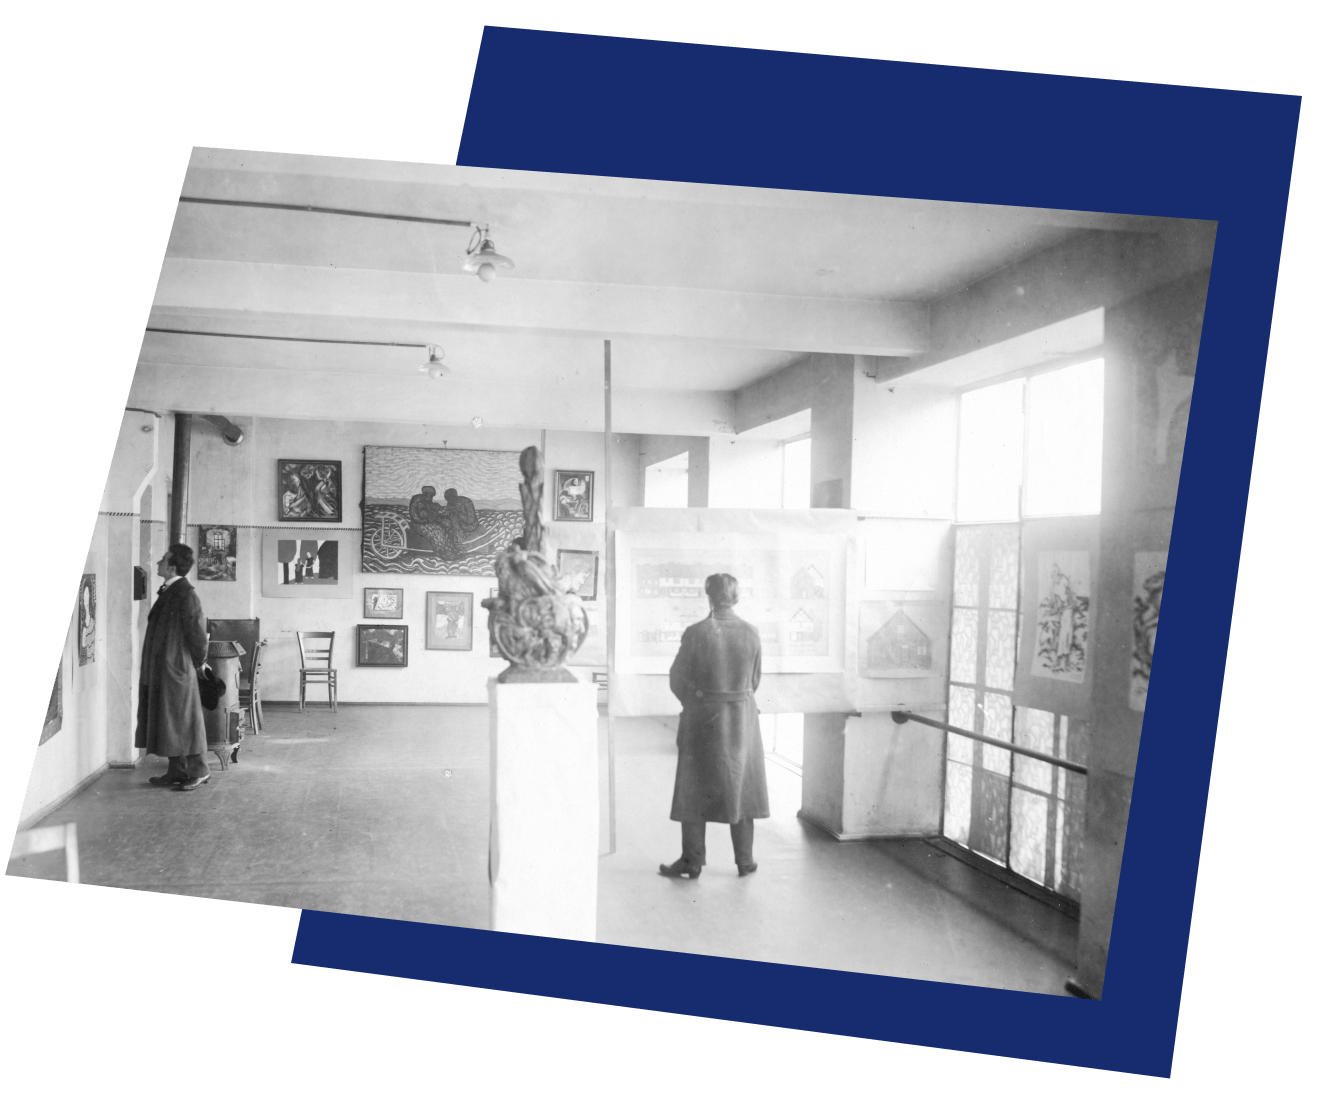 Ein altes Foto: ein Ausstellungsraum voller Bilder und einer Installation. 2 Personen stehen im Raum und schauen sich Bilder an. Die beiden Personen haben beide lange Jacken an und stehen weit voneinander entfernt.